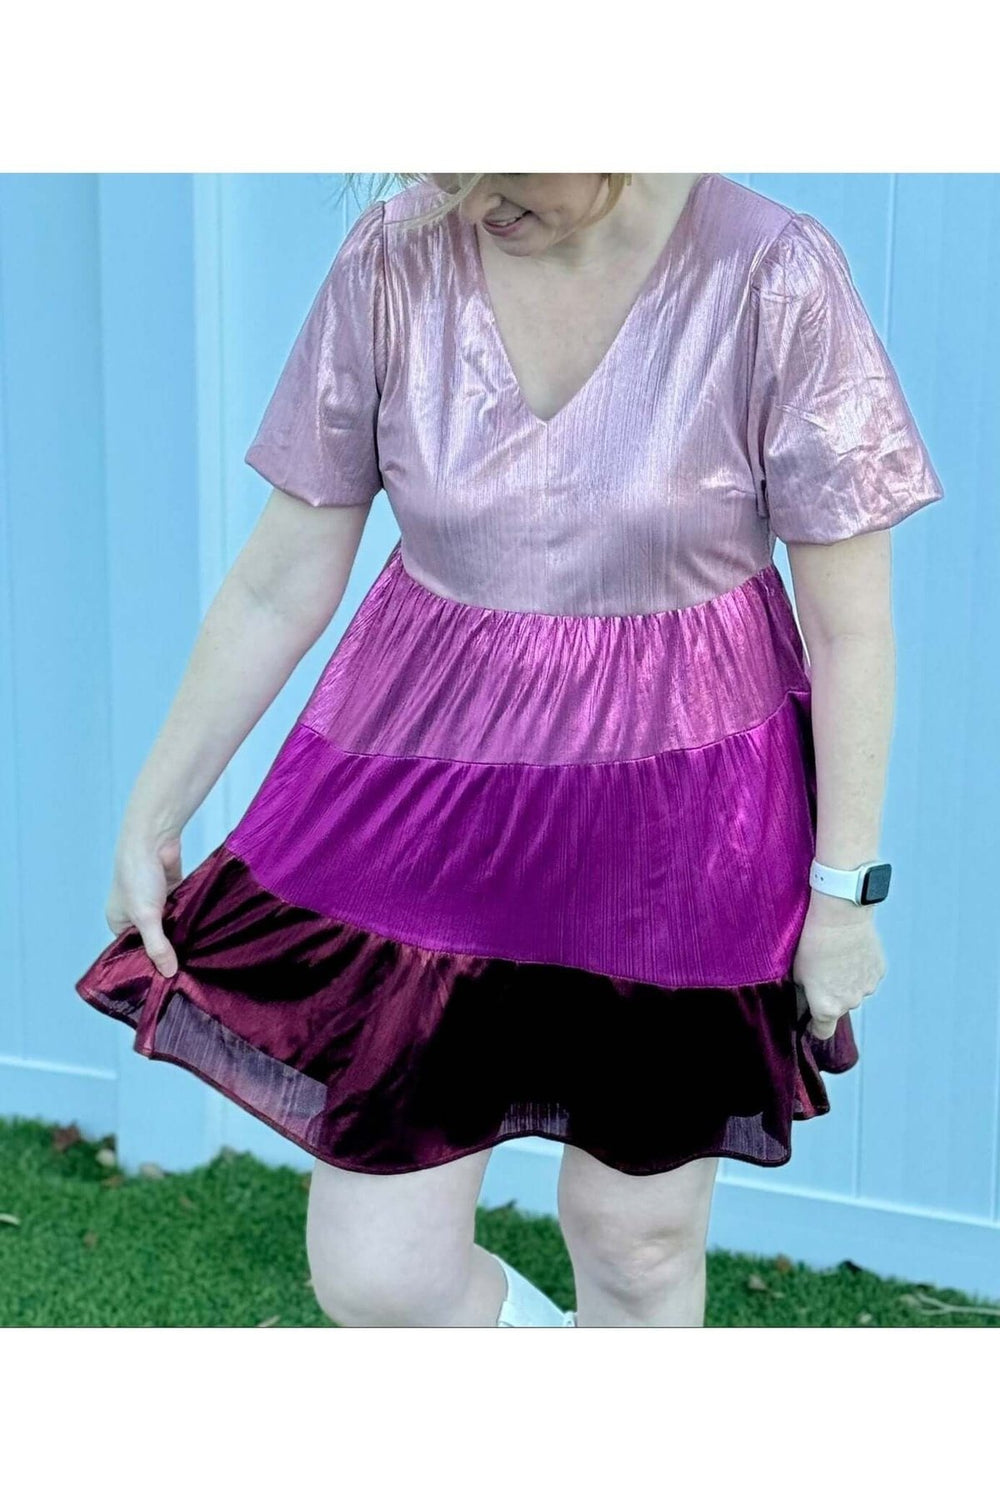 Shiny Knit Color Block Valentine's Dress - Lolo Viv Boutique